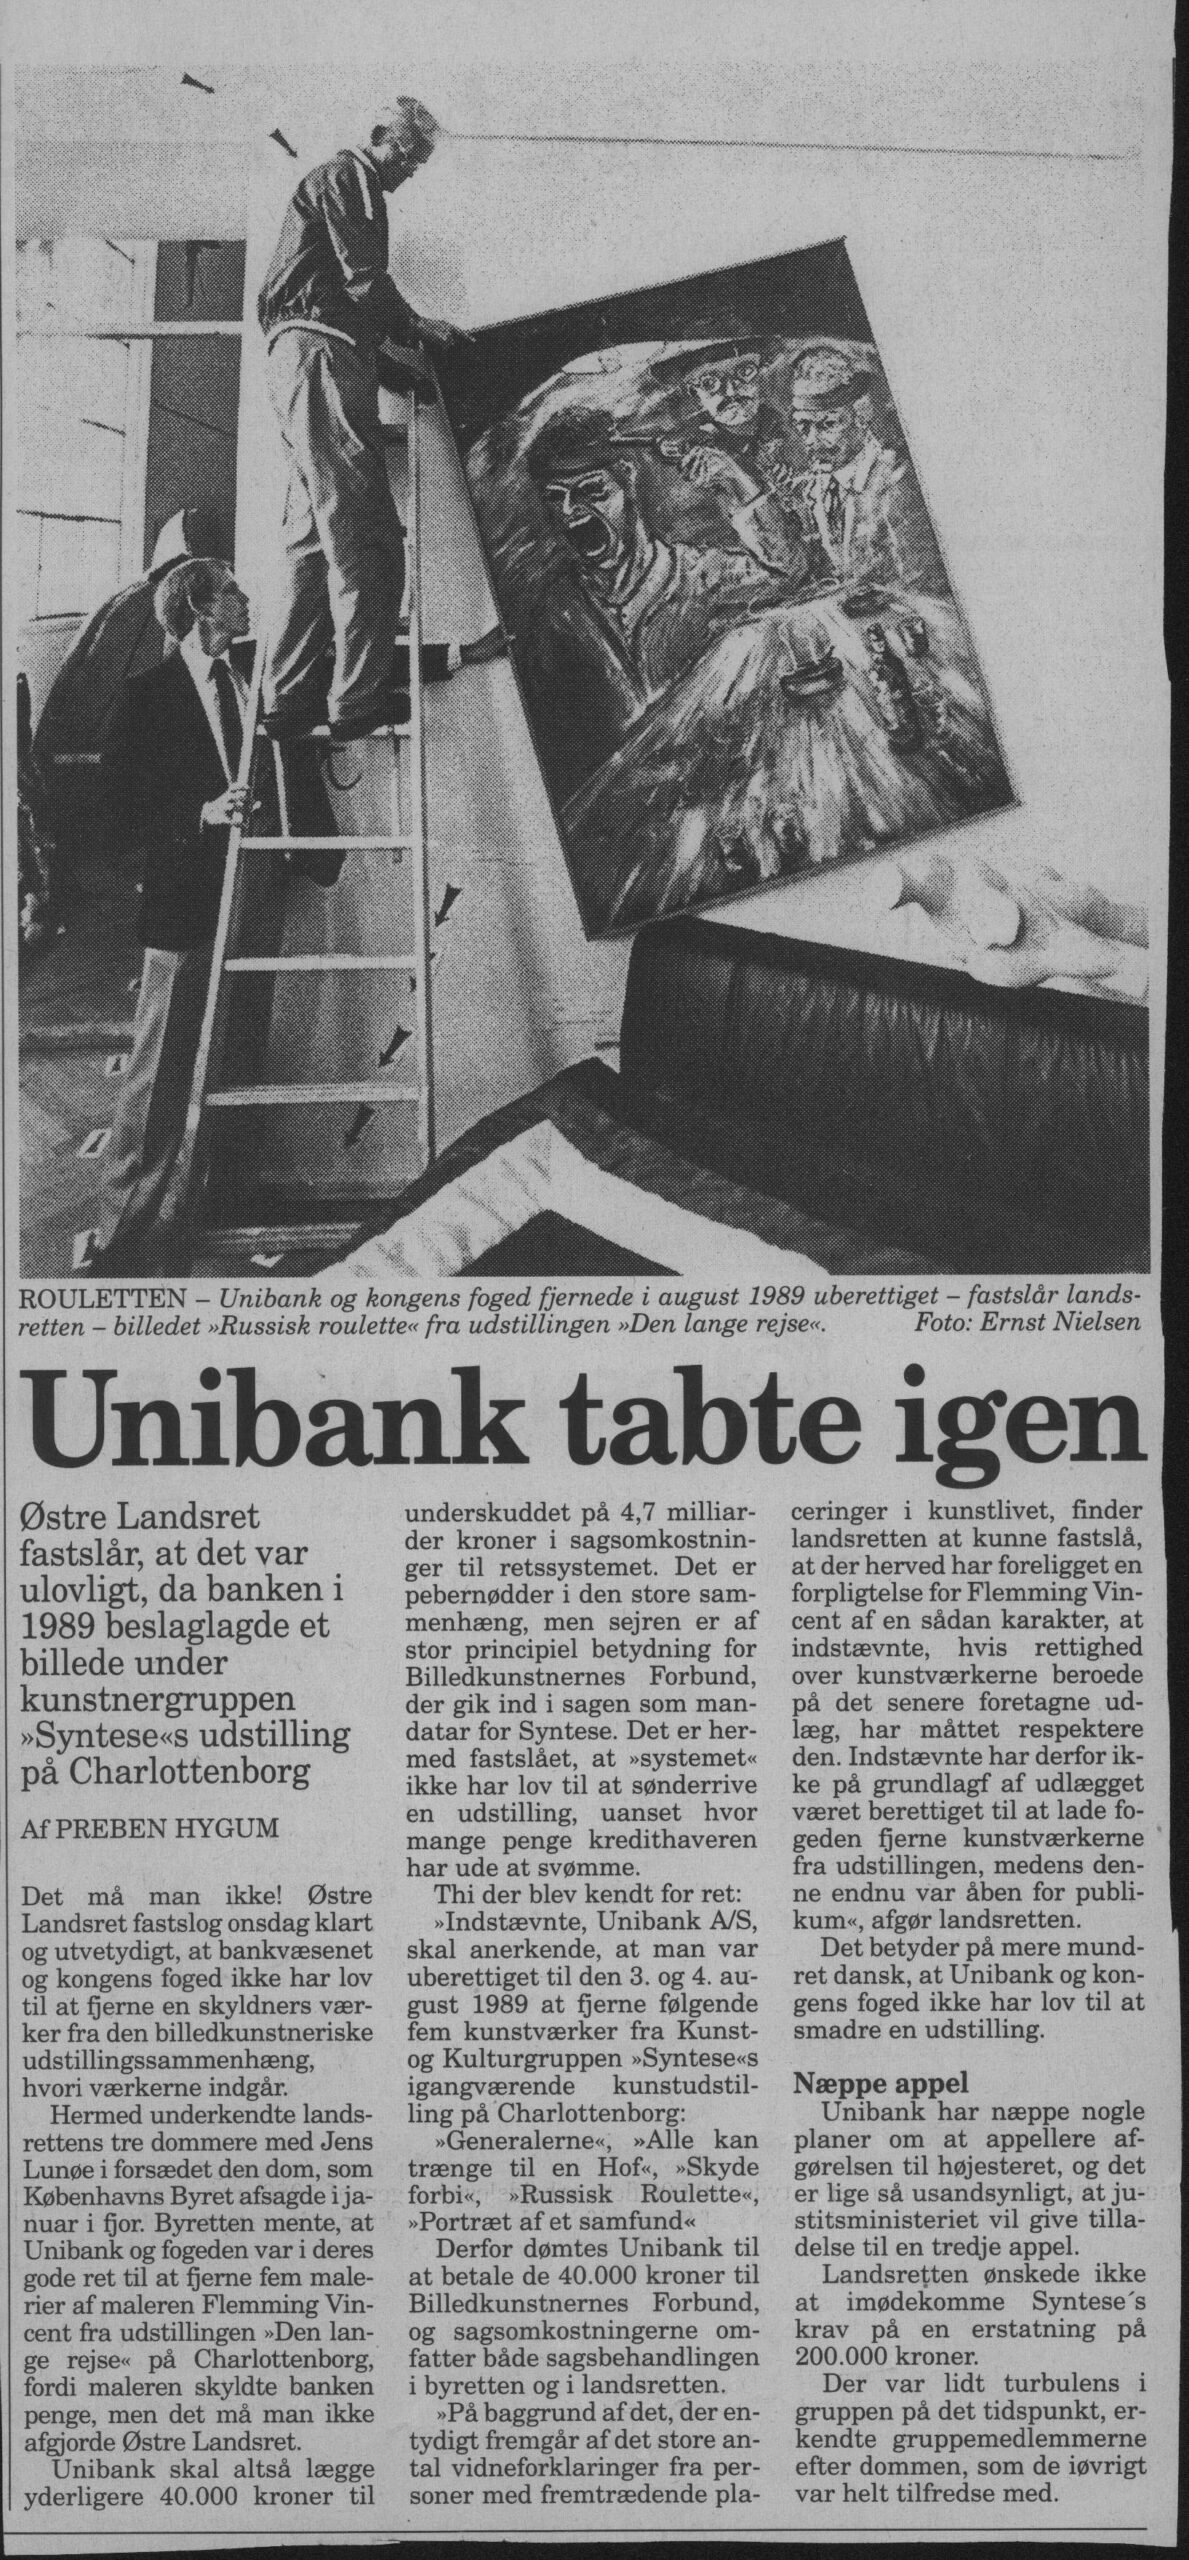 Unibank tabte igen. Omtale (Retssag. Den lange rejse, Charlottenborg, København 1989). Preben Hygum. Information.